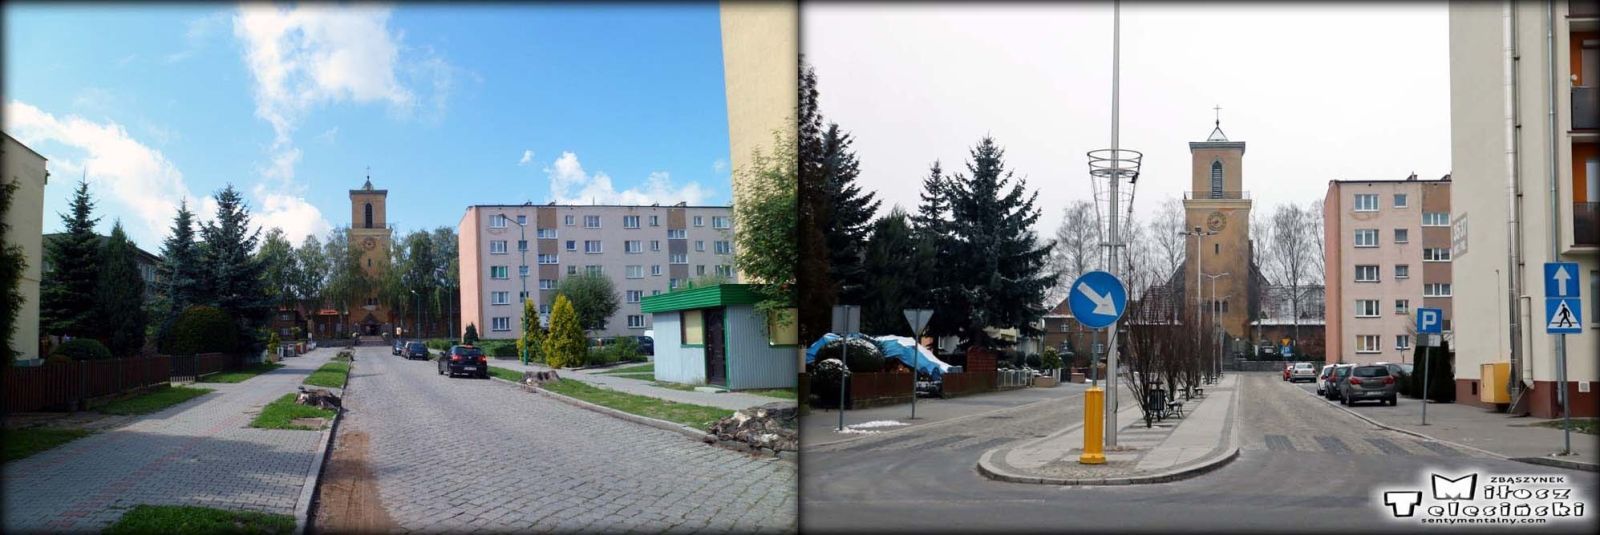 Ulica Krótka w Zbąszynku w dniu 13.08.2013 i 09.12.2021.